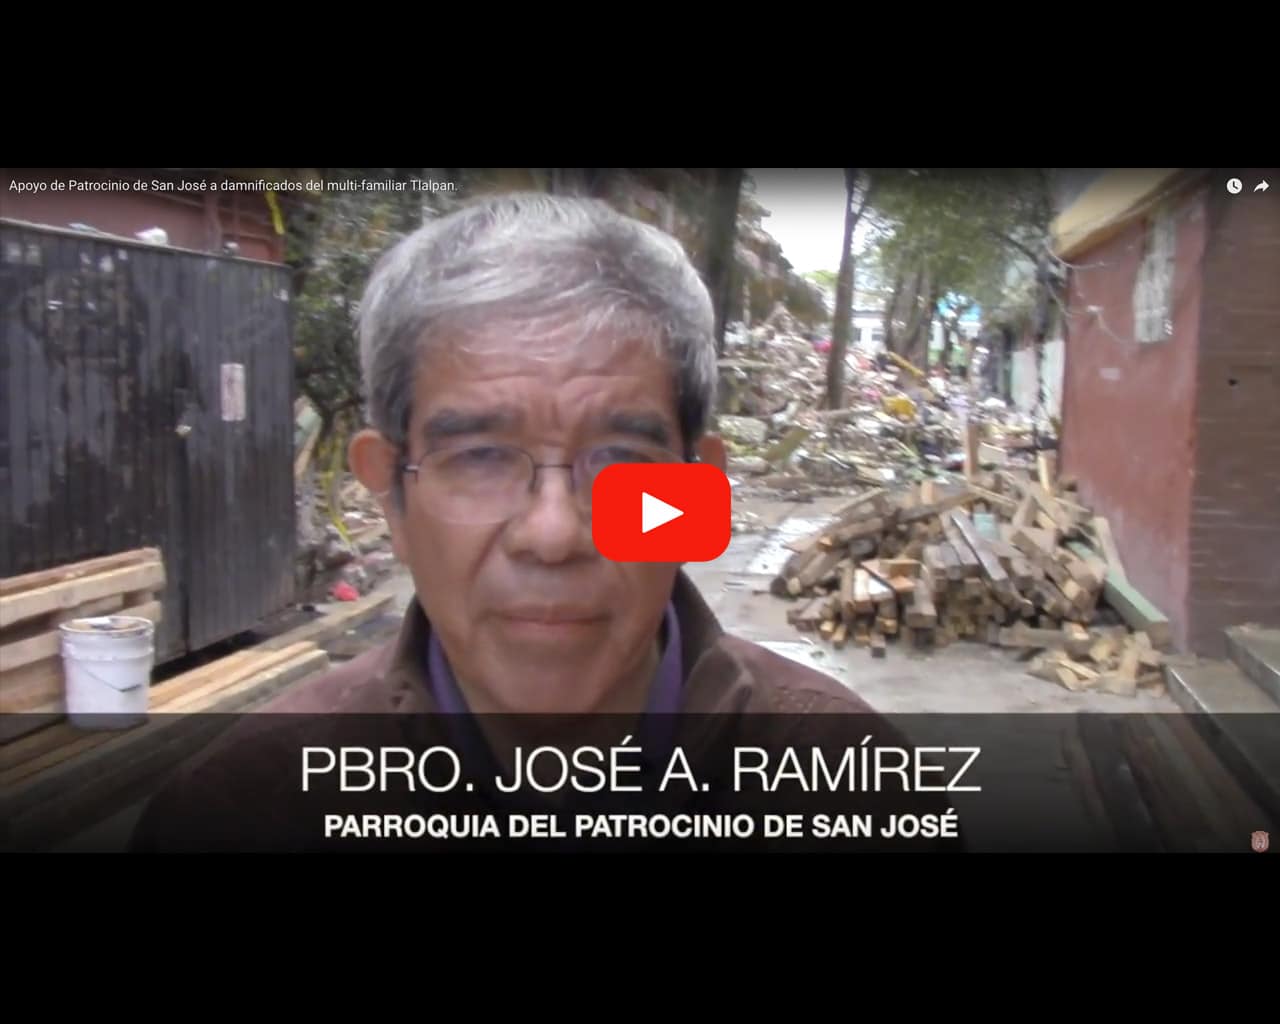 Video: Apoyo de Patrocinio de San José a damnificados del multi-familiar Tlalpan.